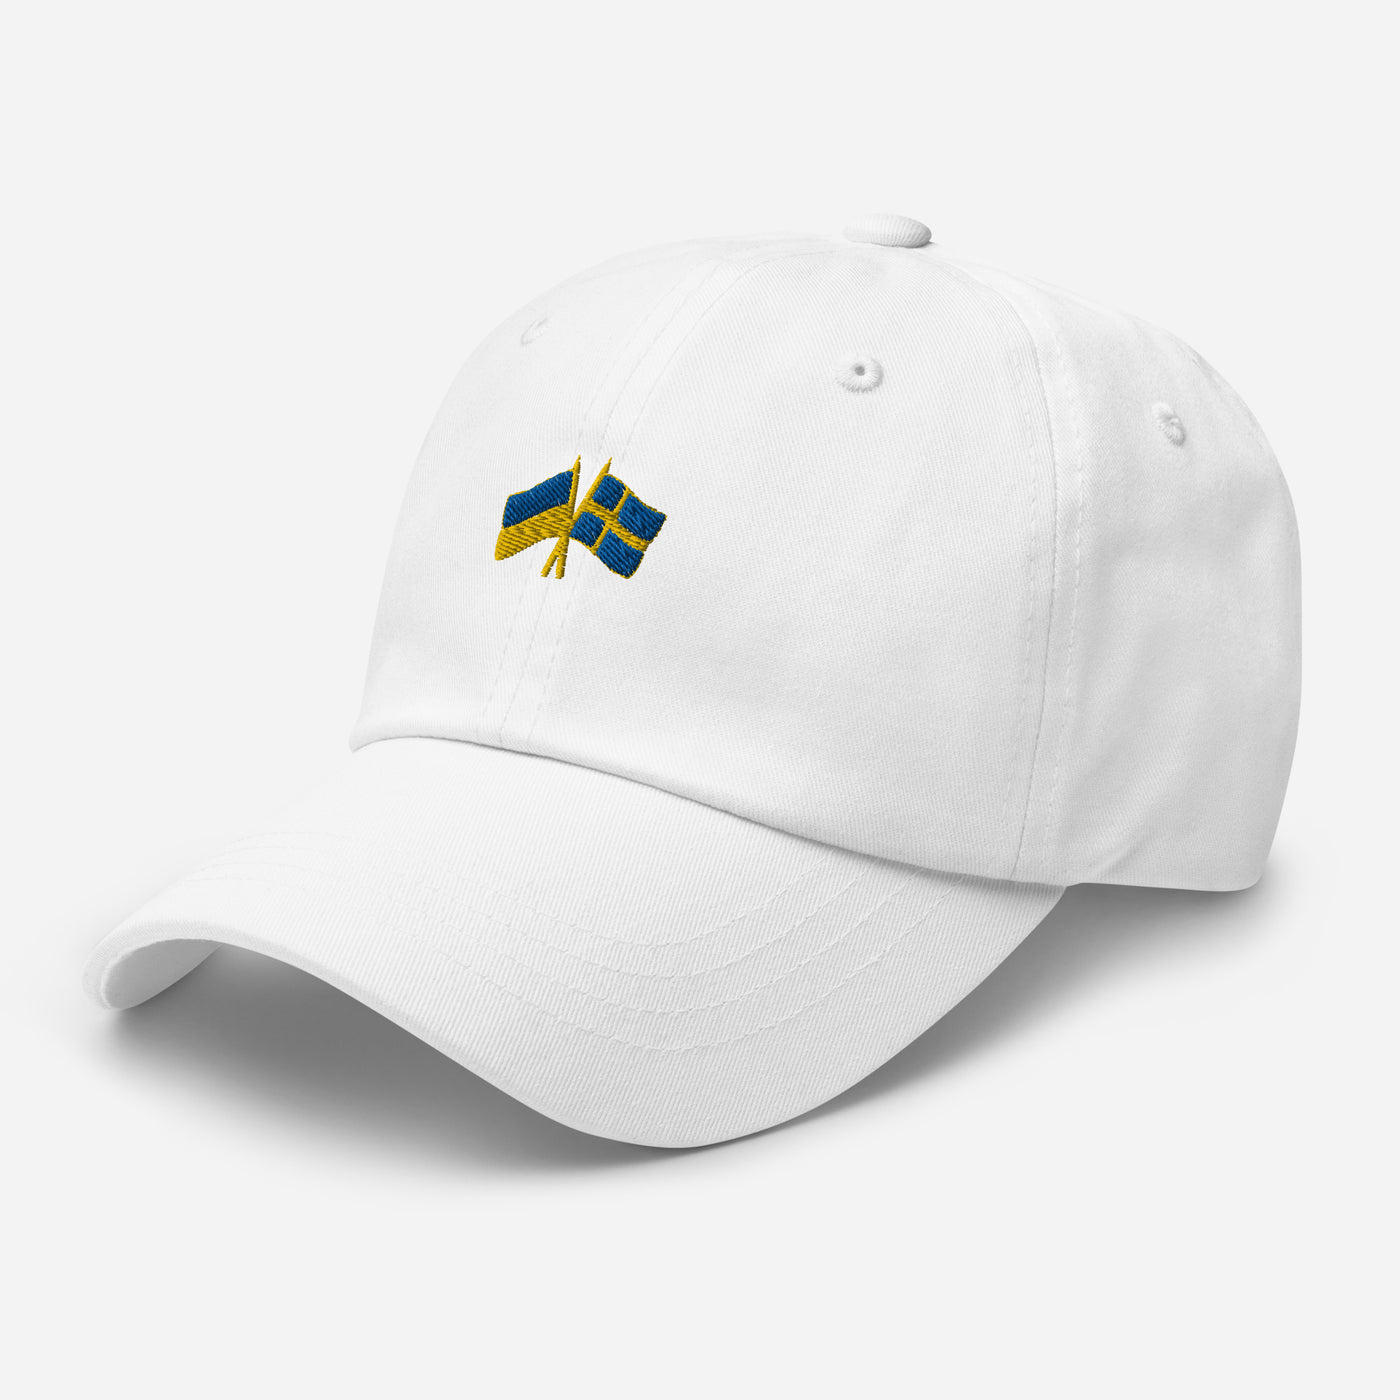 Sweden-Ukraine Cap Embroidery